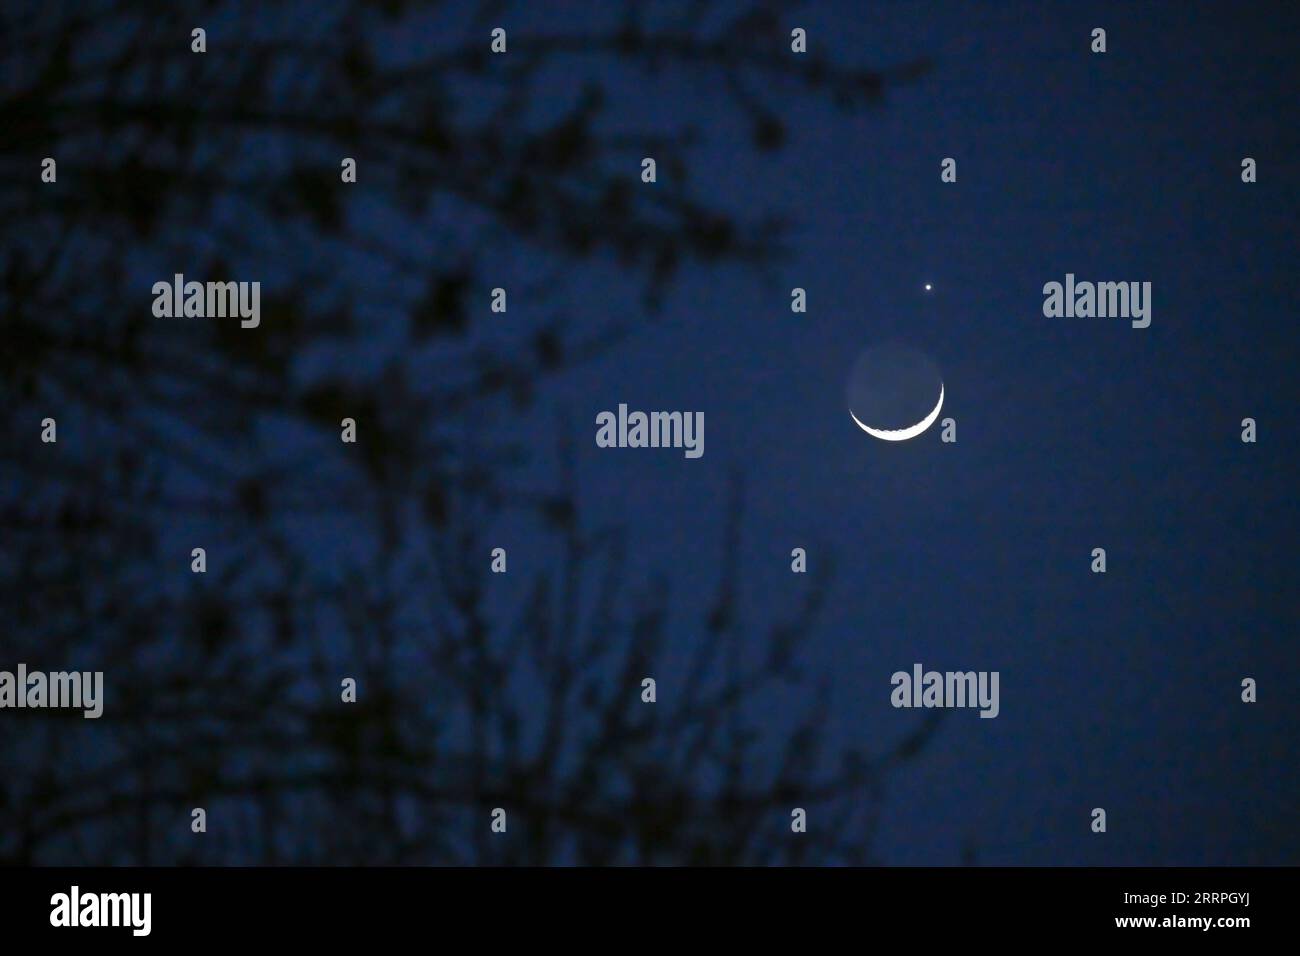 230324 -- PÉKIN, le 24 mars 2023 -- la planète Vénus et le croissant de lune sont photographiés à Pékin, capitale de la Chine, le 24 mars 2023. CHINE-BEIJING-LUNAR OCCULTATION DE VÉNUS CN LIXXIN PUBLICATIONXNOTXINXCHN Banque D'Images